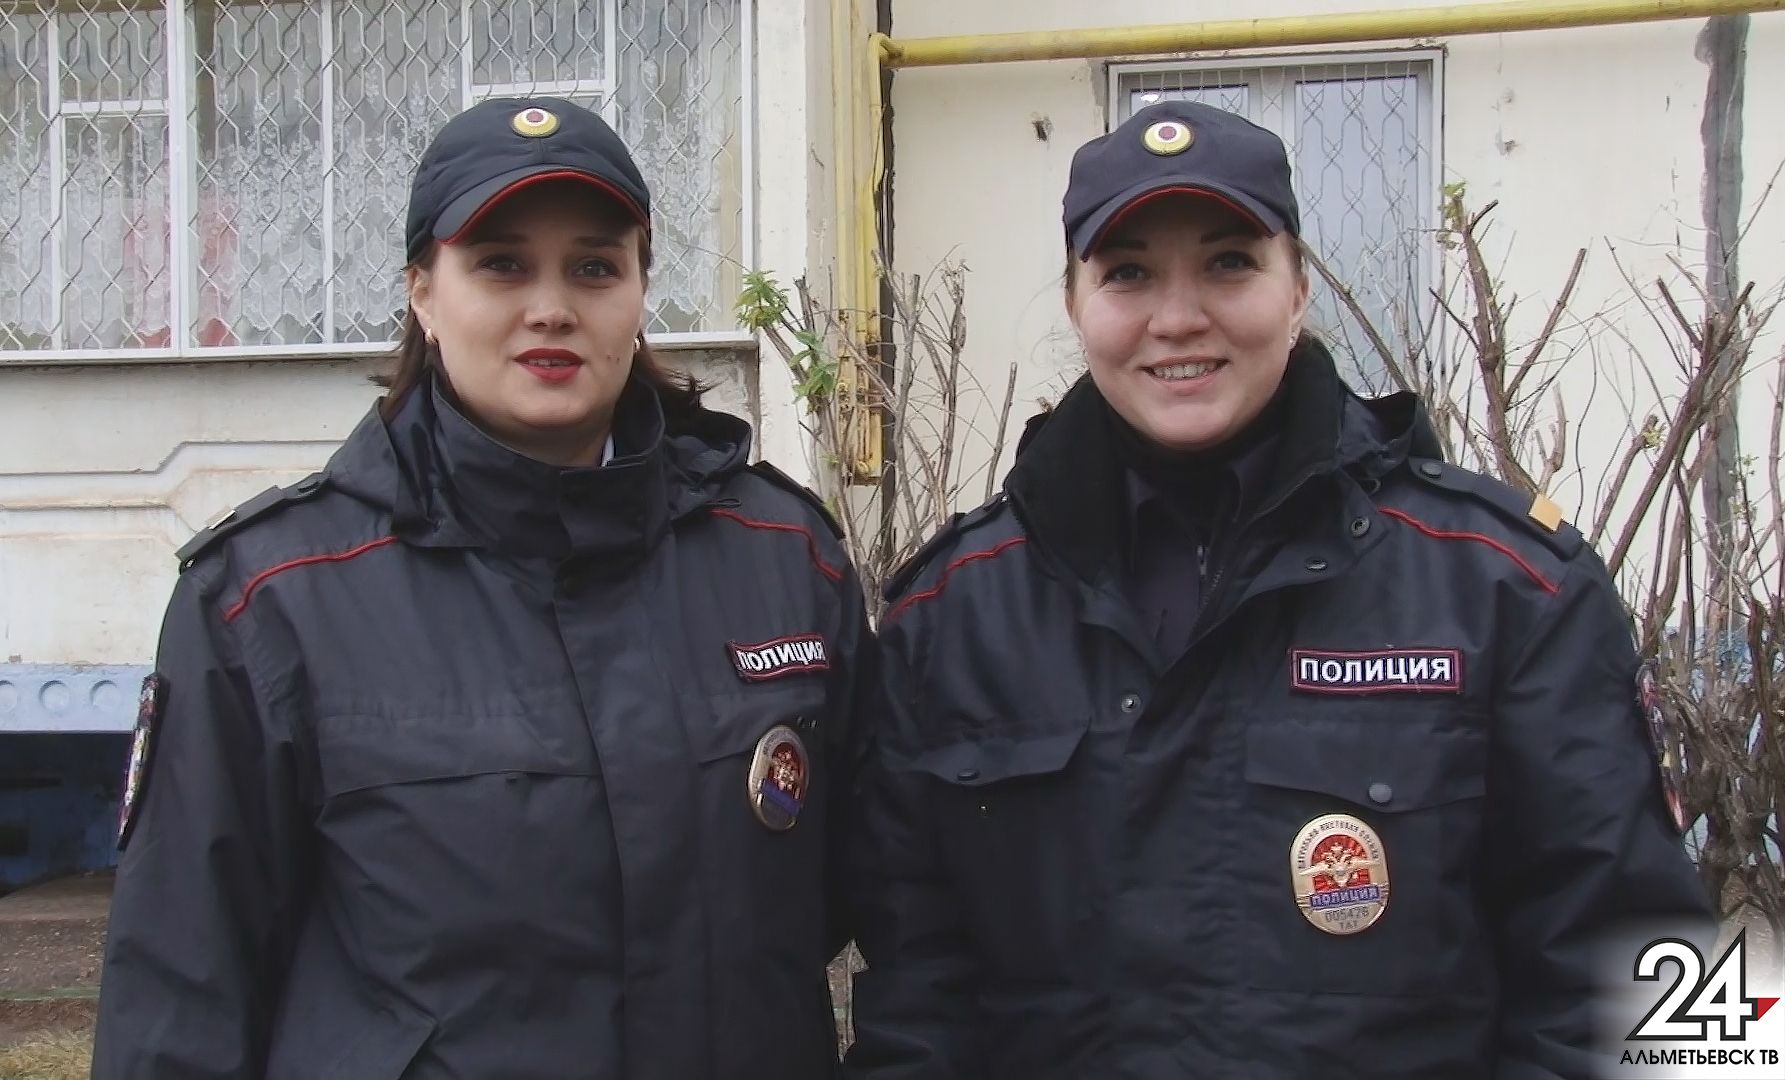 Форма им к лицу: четверть всех сотрудников альметьевской полиции – женщины